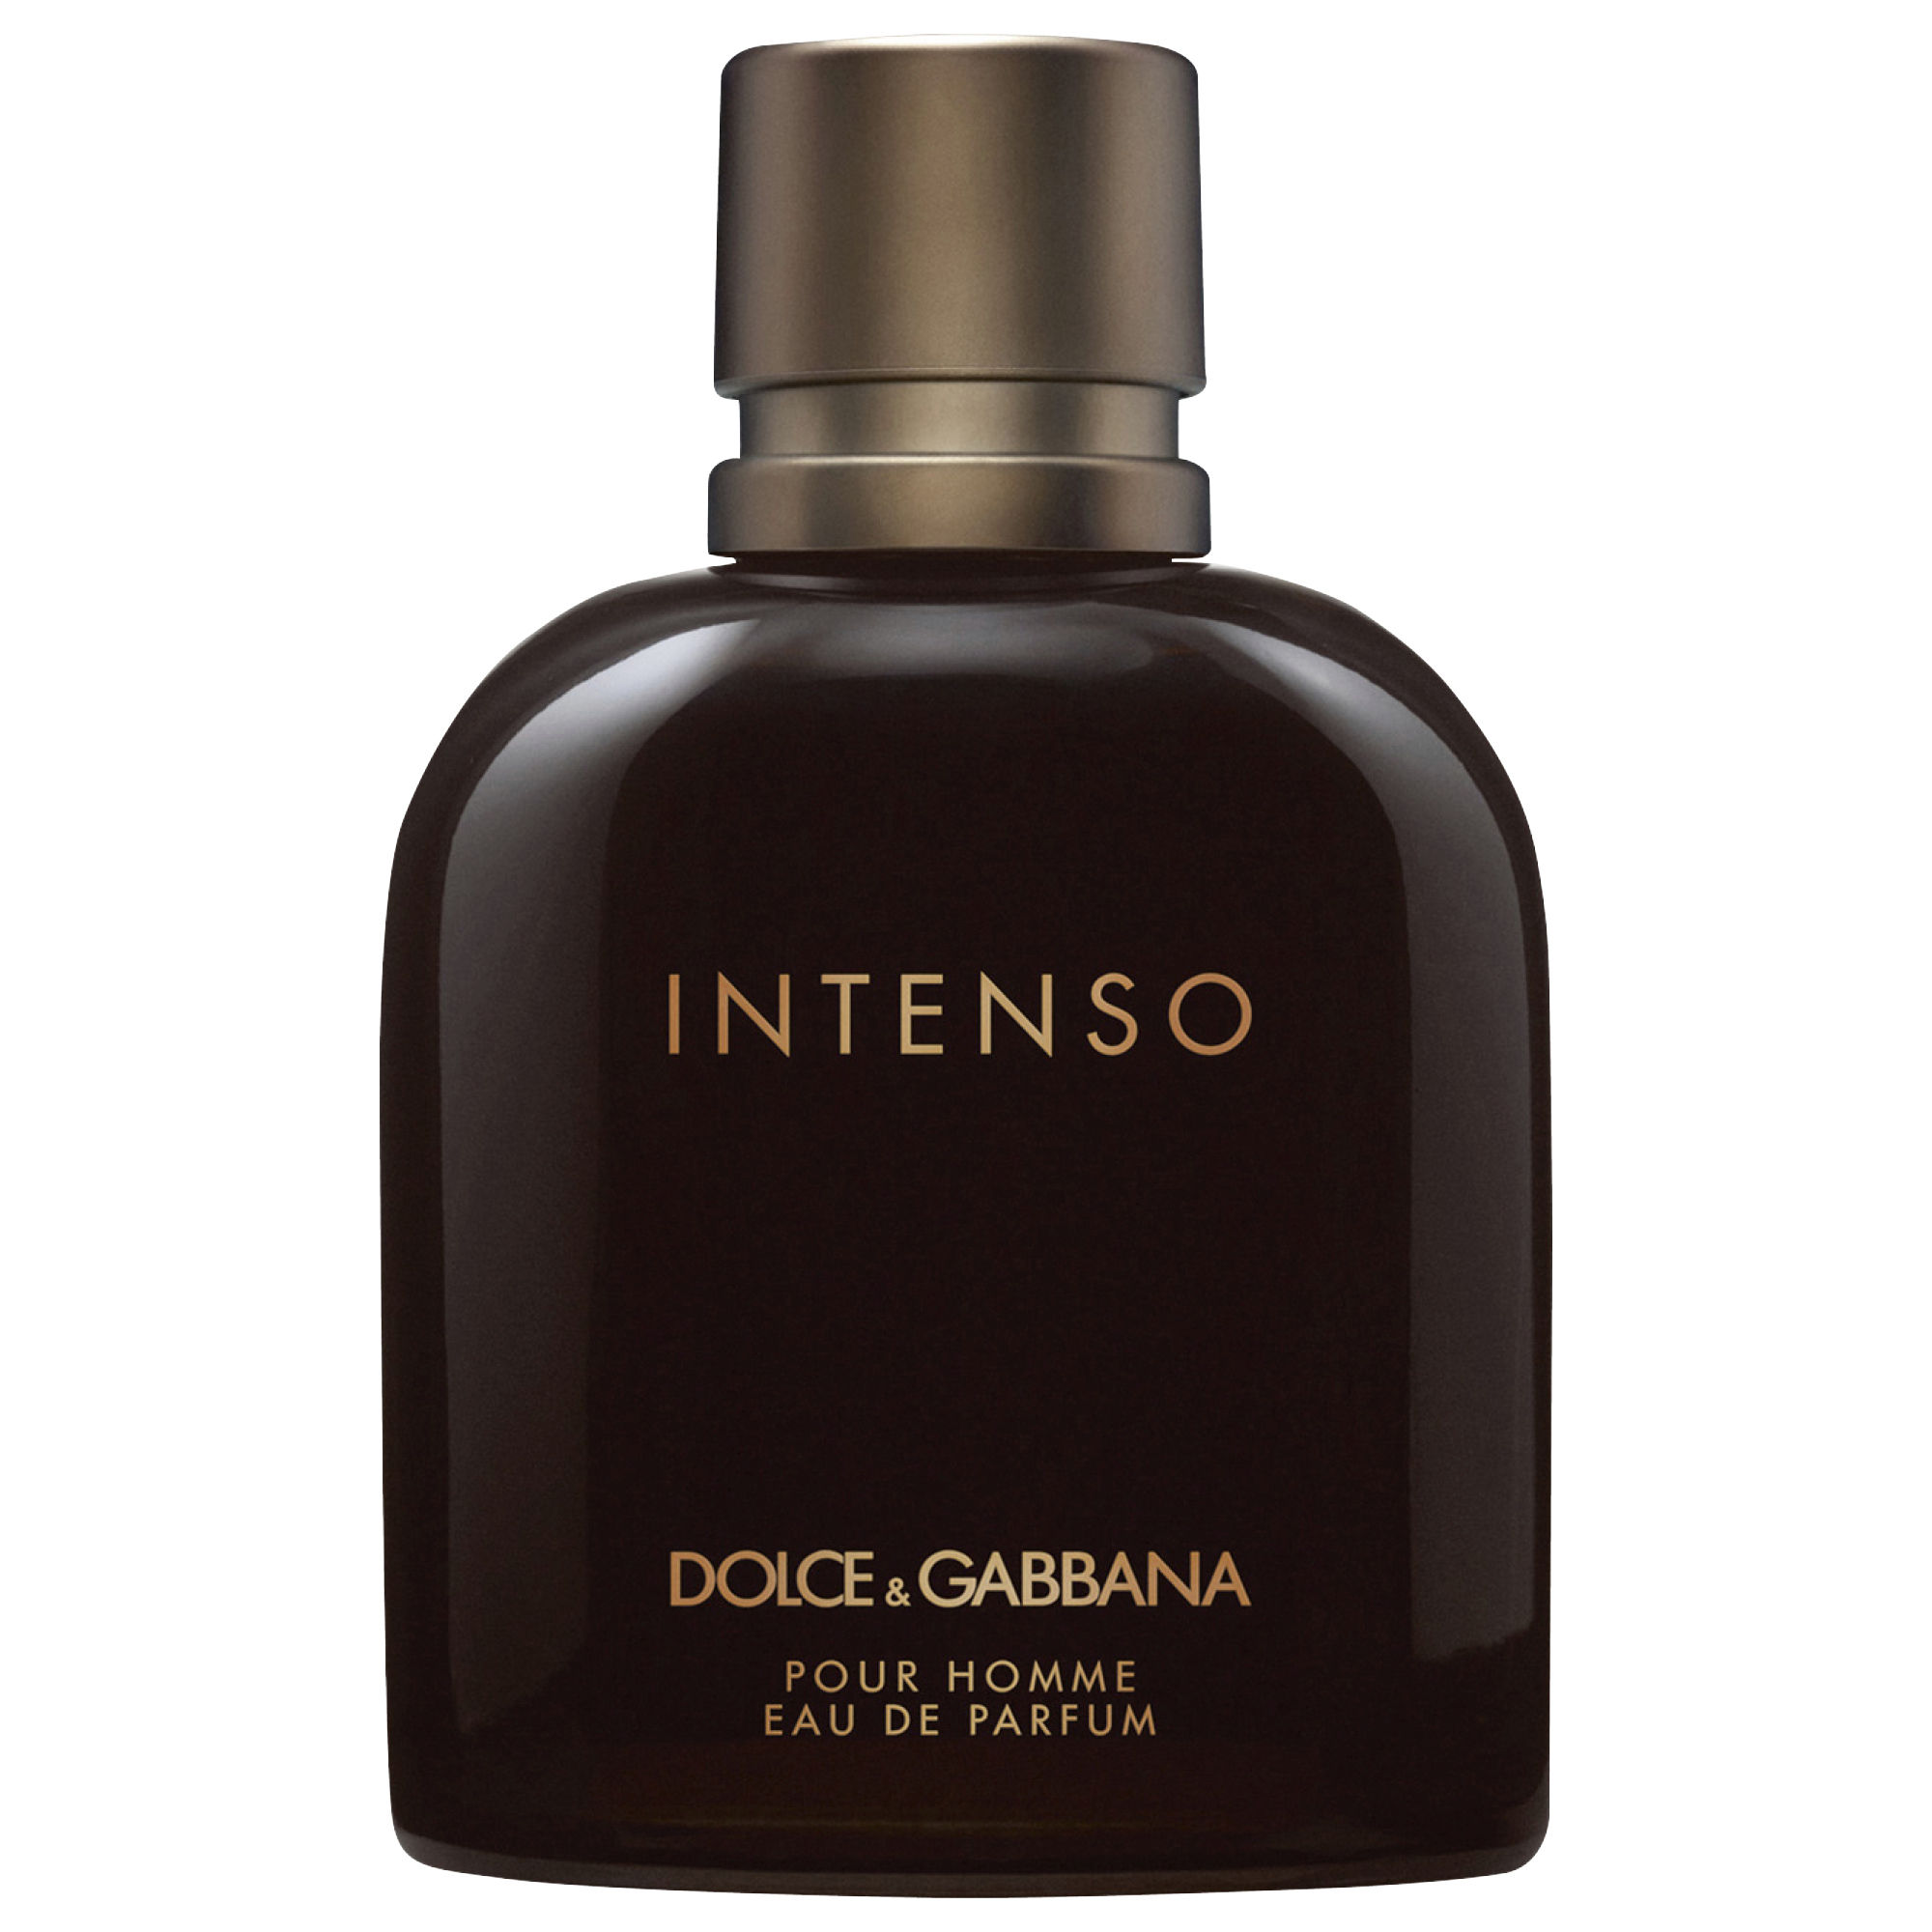 dolce-gabbana-intenso-eau-de-parfum-spray-200-ml